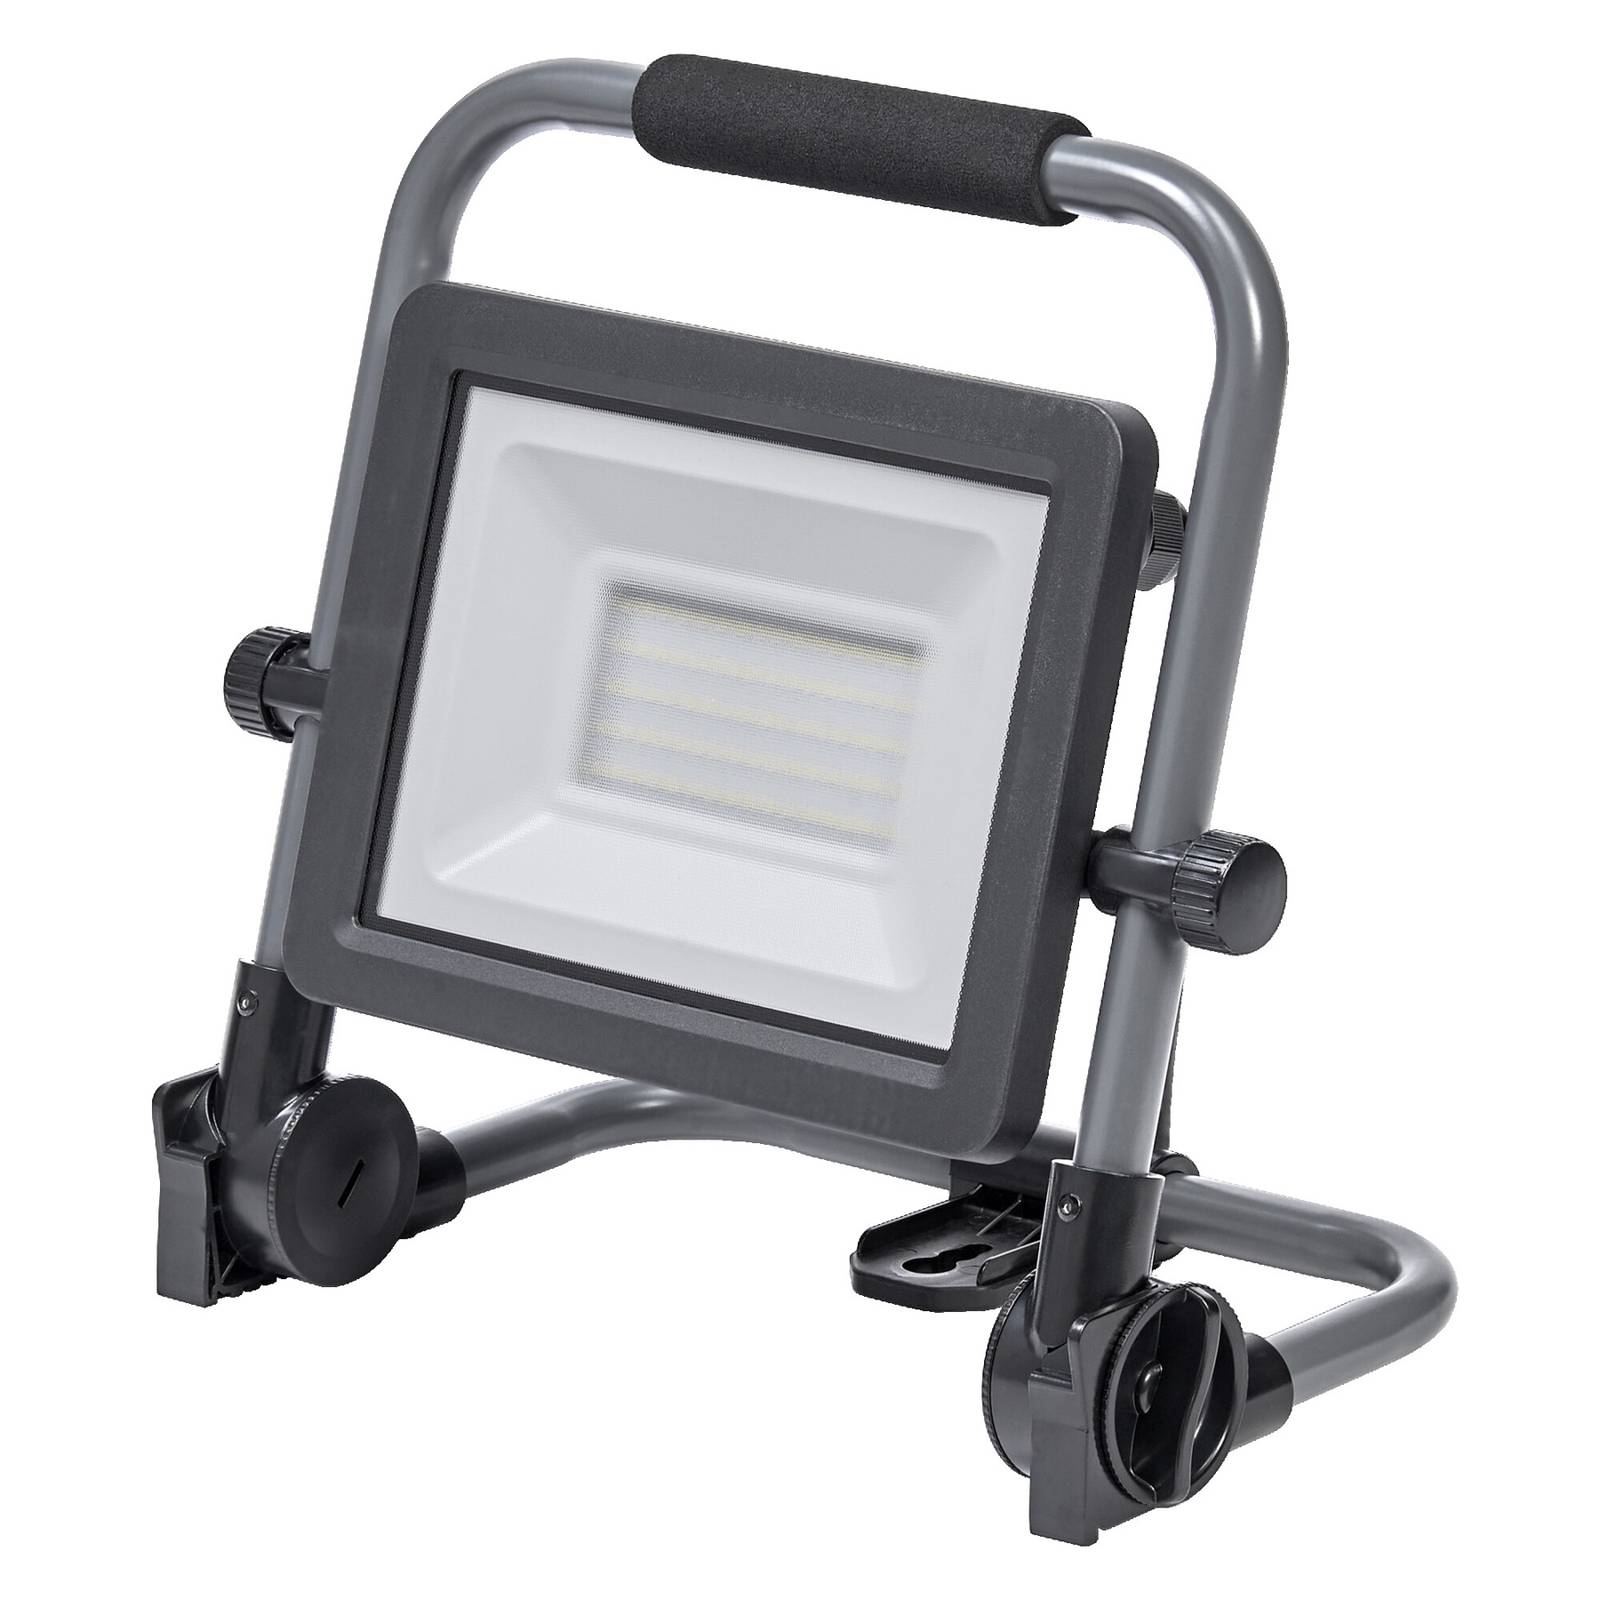 Ledvance LED-Worklight Value R-Stand Strahler 50W